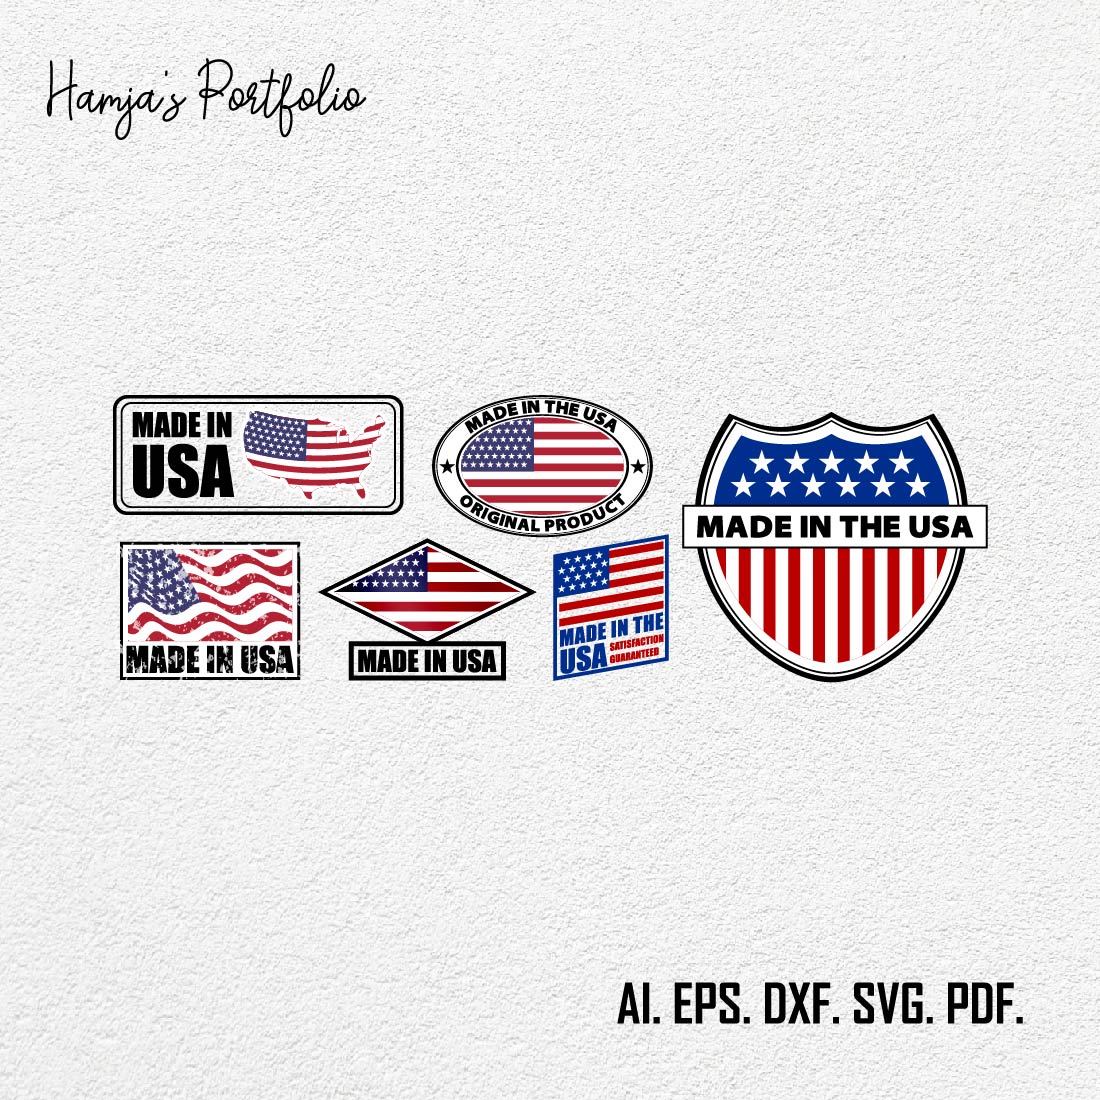 Made in USA Svg Sign With Flag, File Vector, Shirt, Mug, United States Svg, USA Clipart, Patriotic Svg, USA Svg Bundle, Svg, Jpg, Png cover image.